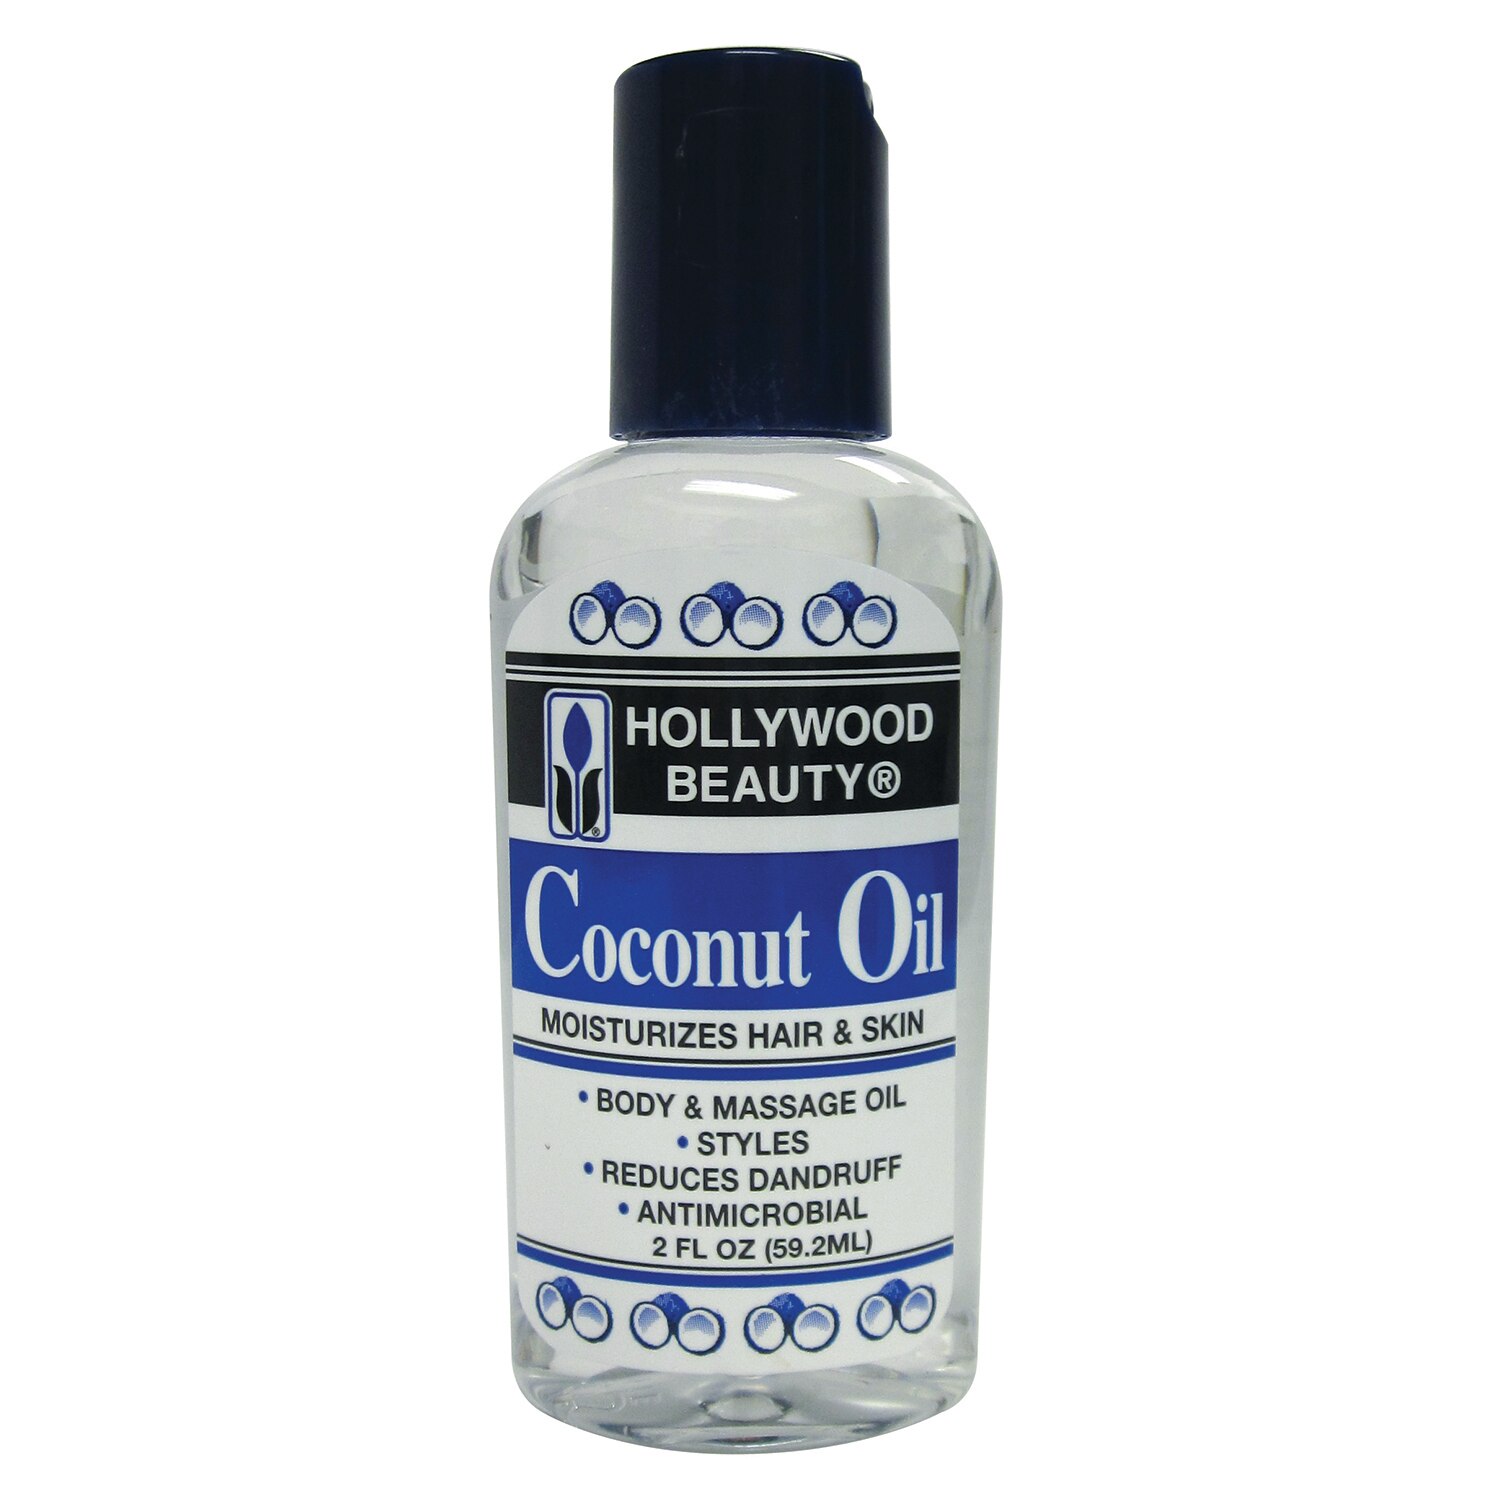 Hollywood Beauty Coconut Oil, 2 OZ